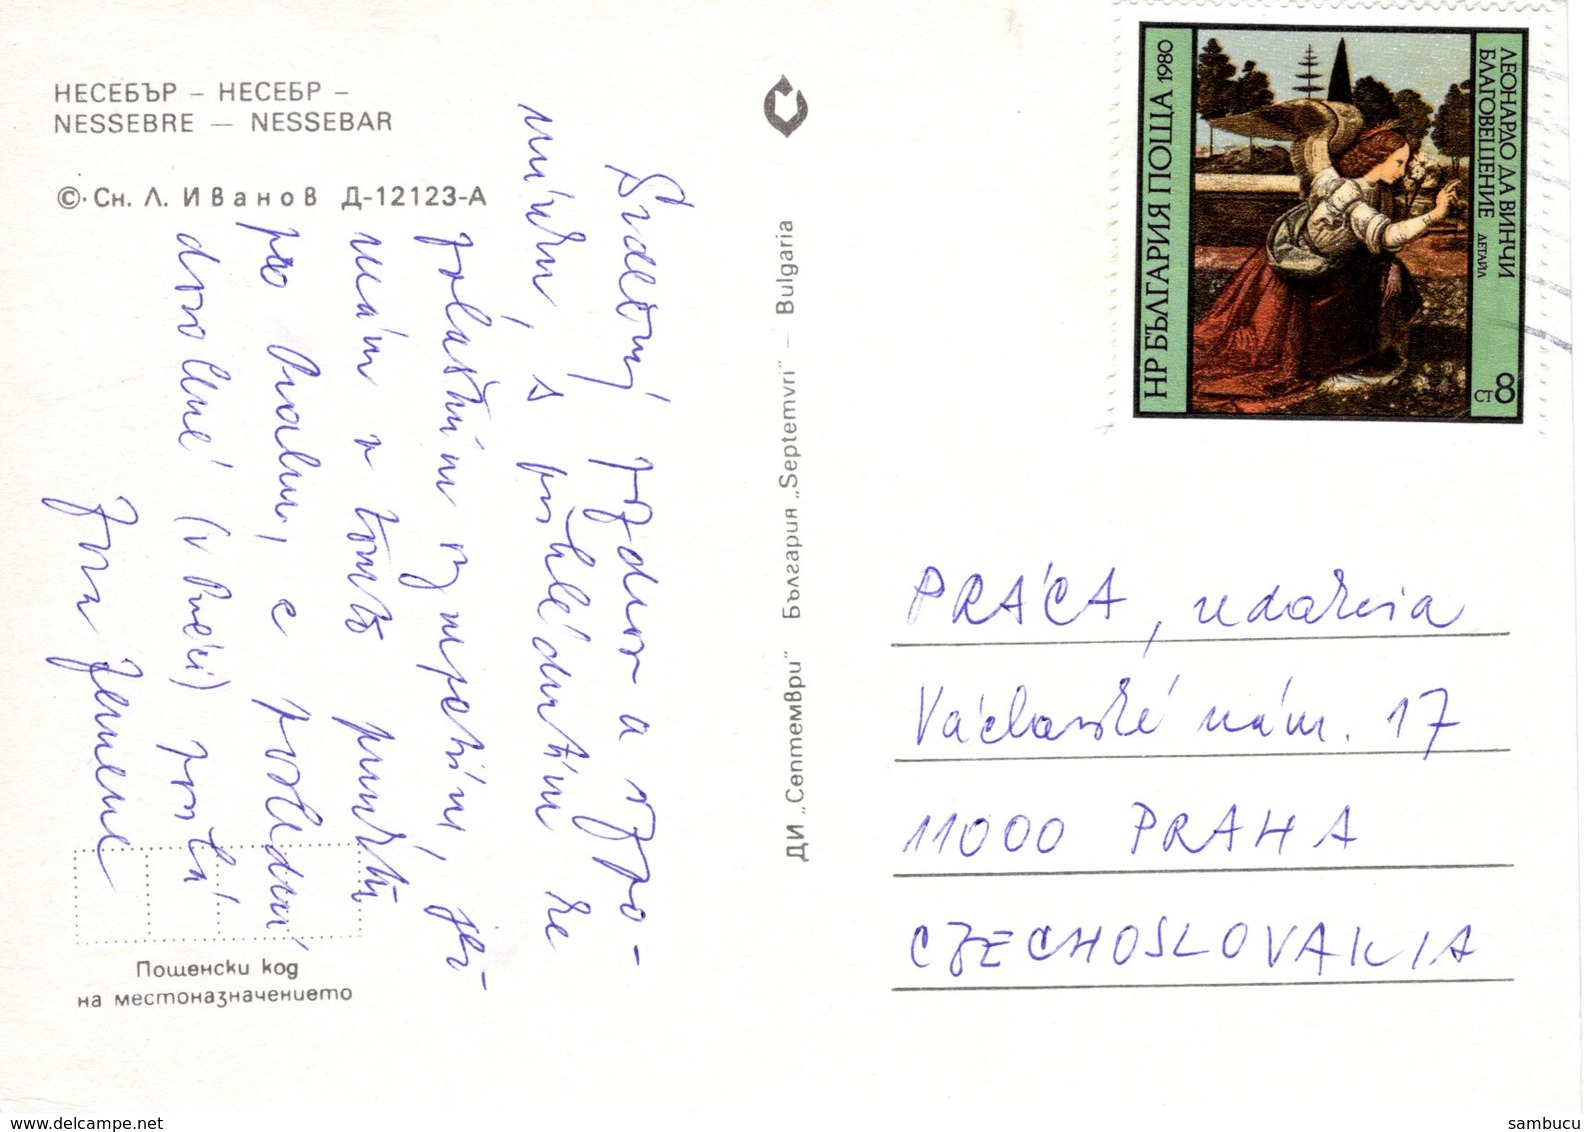 Nessebar Nessebre - Stadtansicht Ca 1980 - Bulgarien